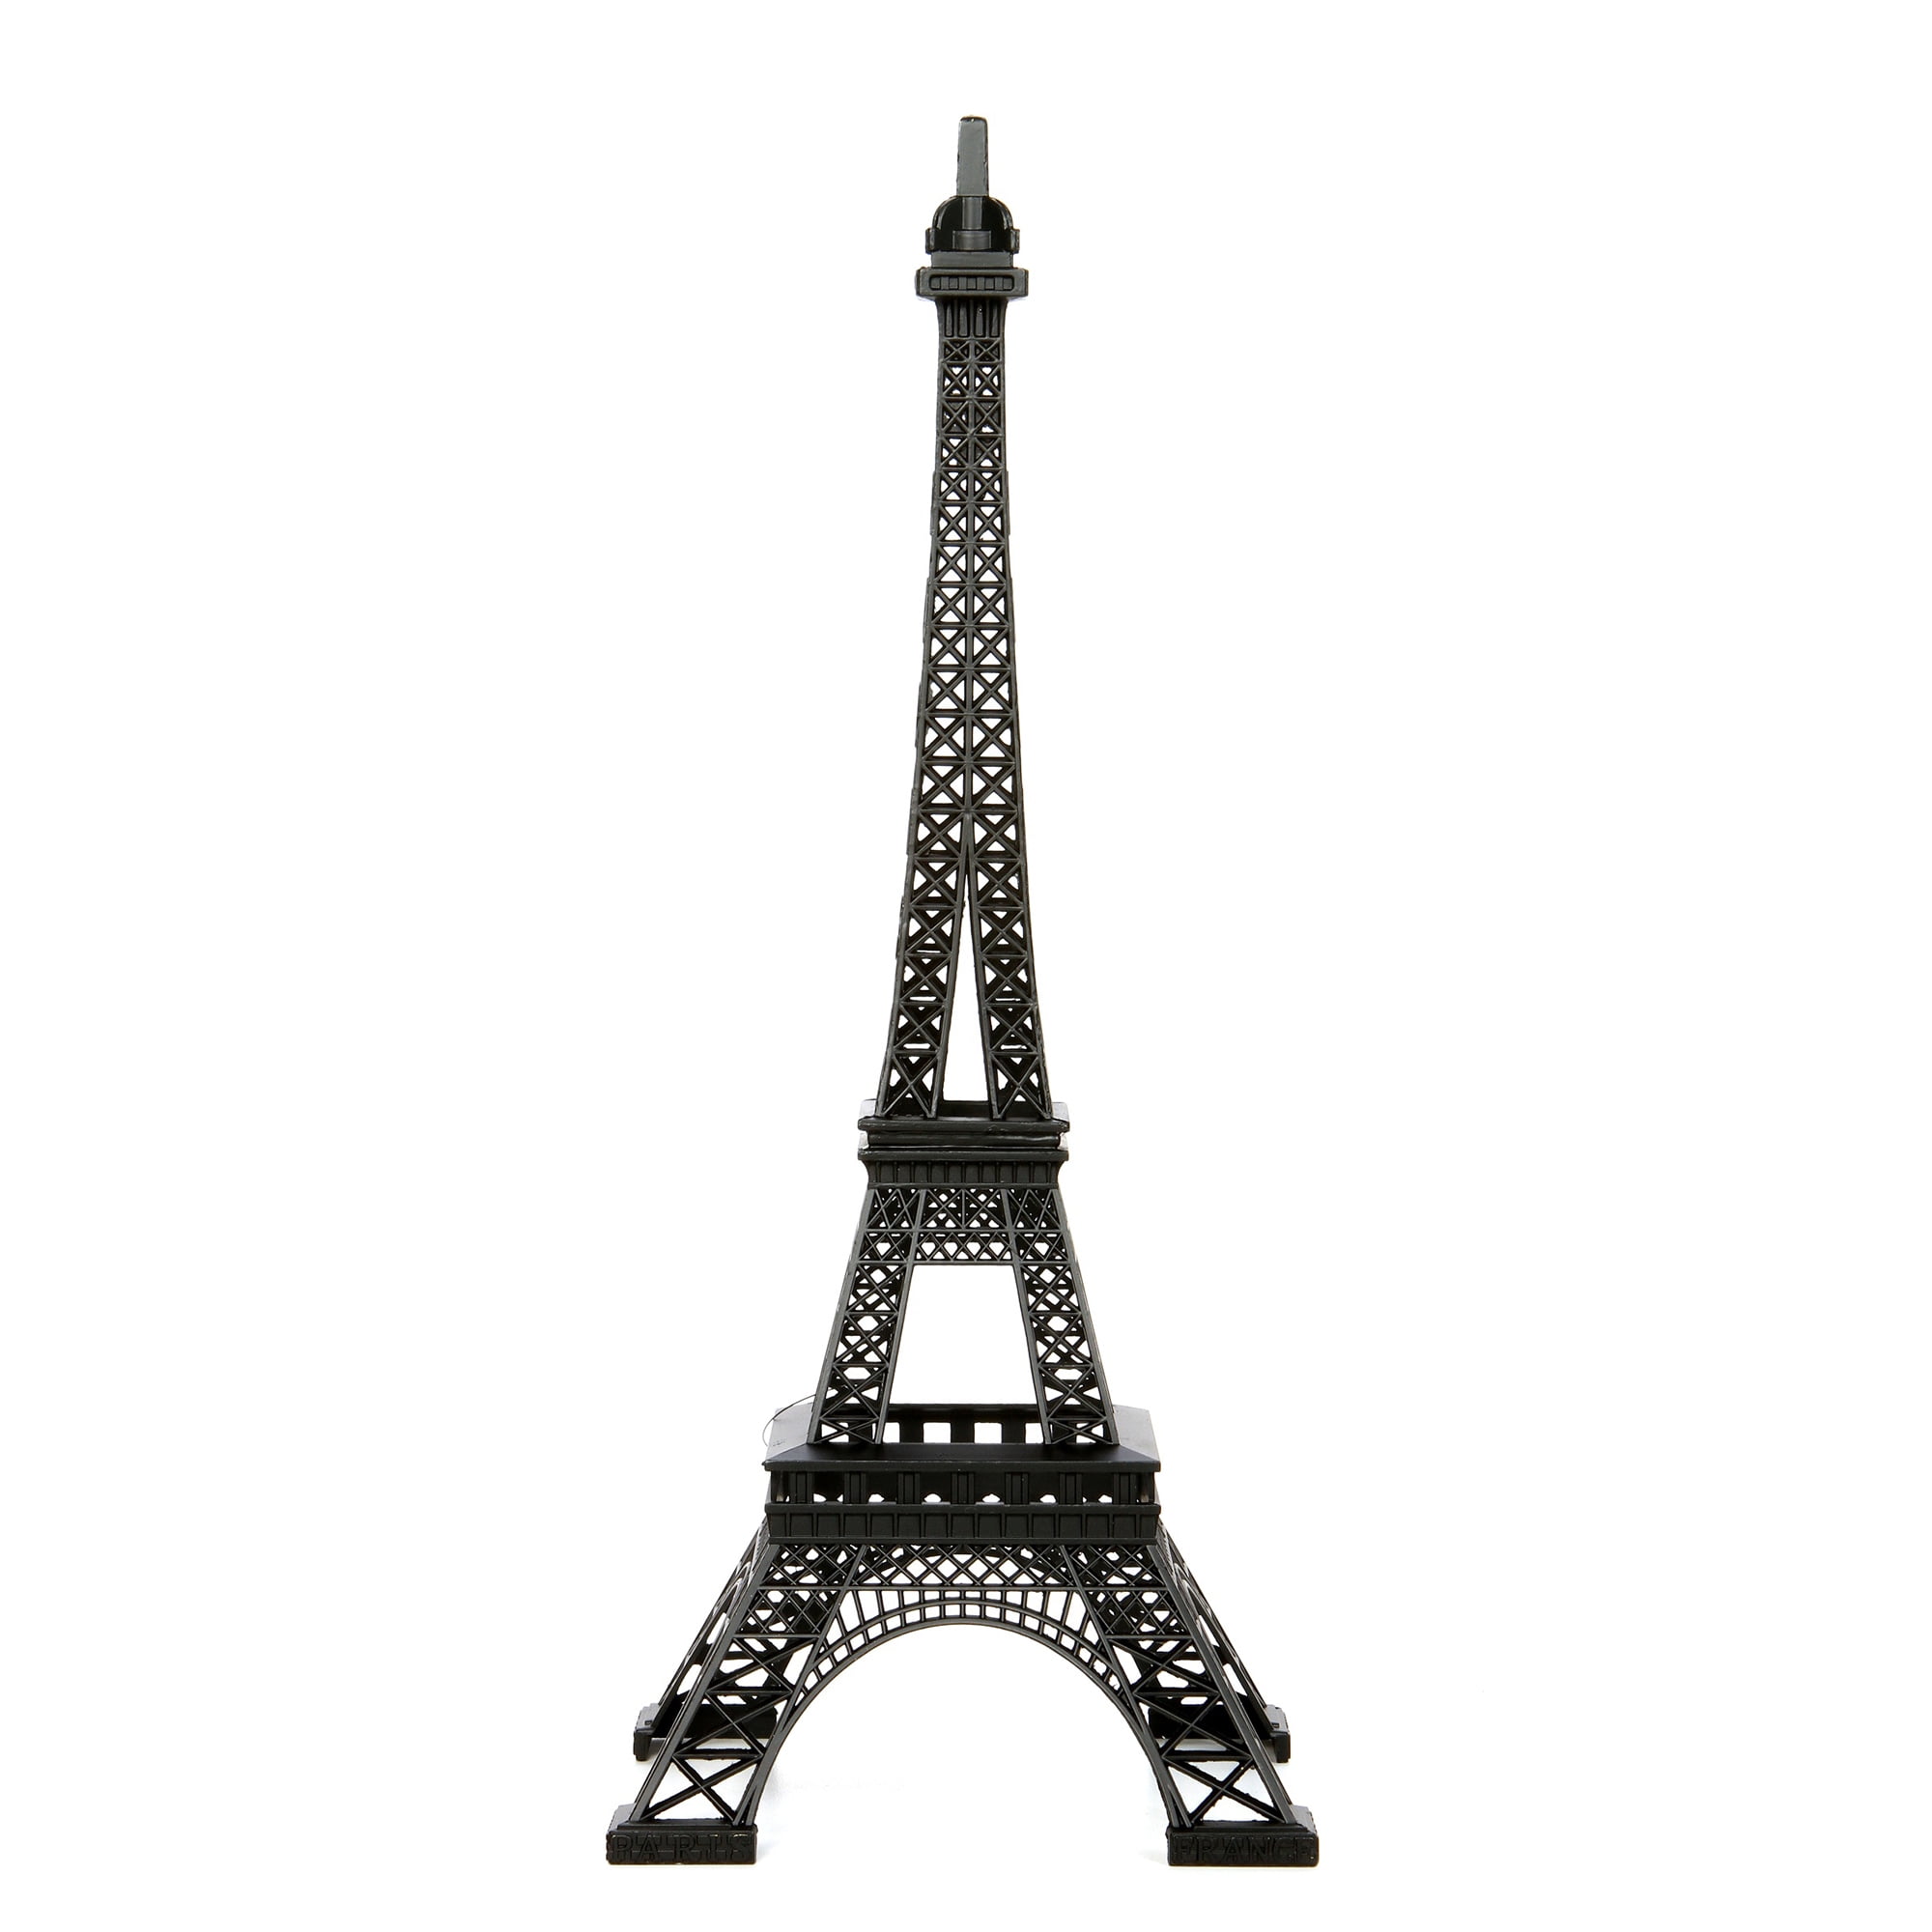 DS 32cm DISTINCTIVE STYLE Eiffel Tower Model Eiffel Tower Metallic Statue Eiffel Tower Figurine for Souvenirs